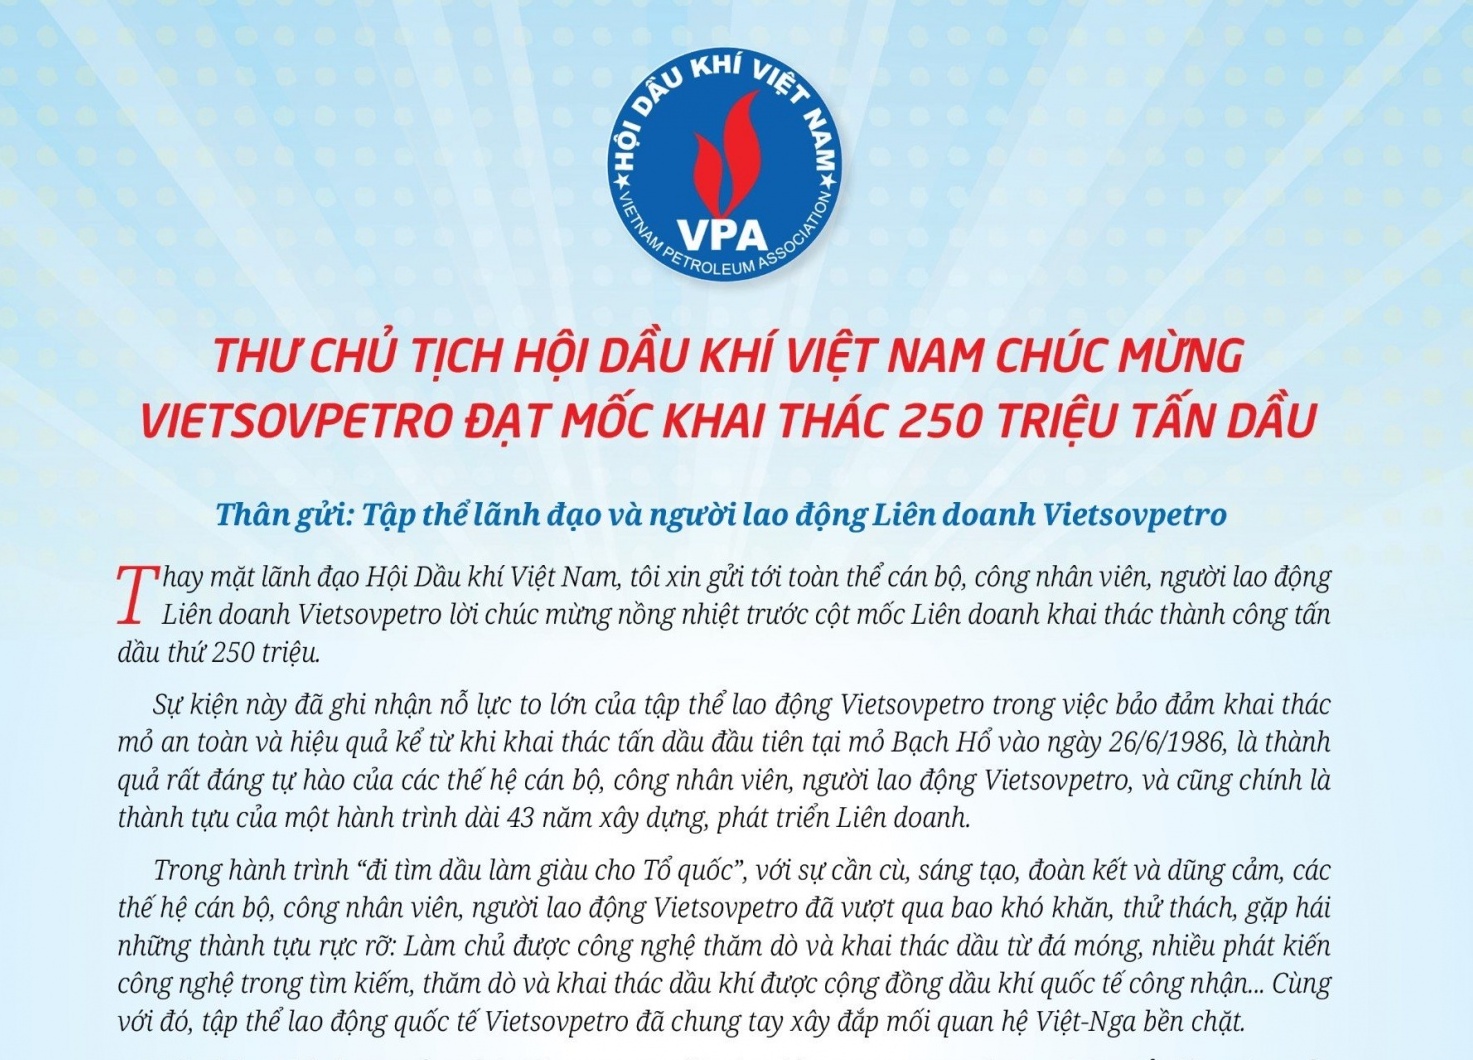 Chủ tịch Hội Dầu khí Việt Nam gửi thư chúc mừng Vietsovpetro đạt mốc khai thác 250 triệu tấn dầu